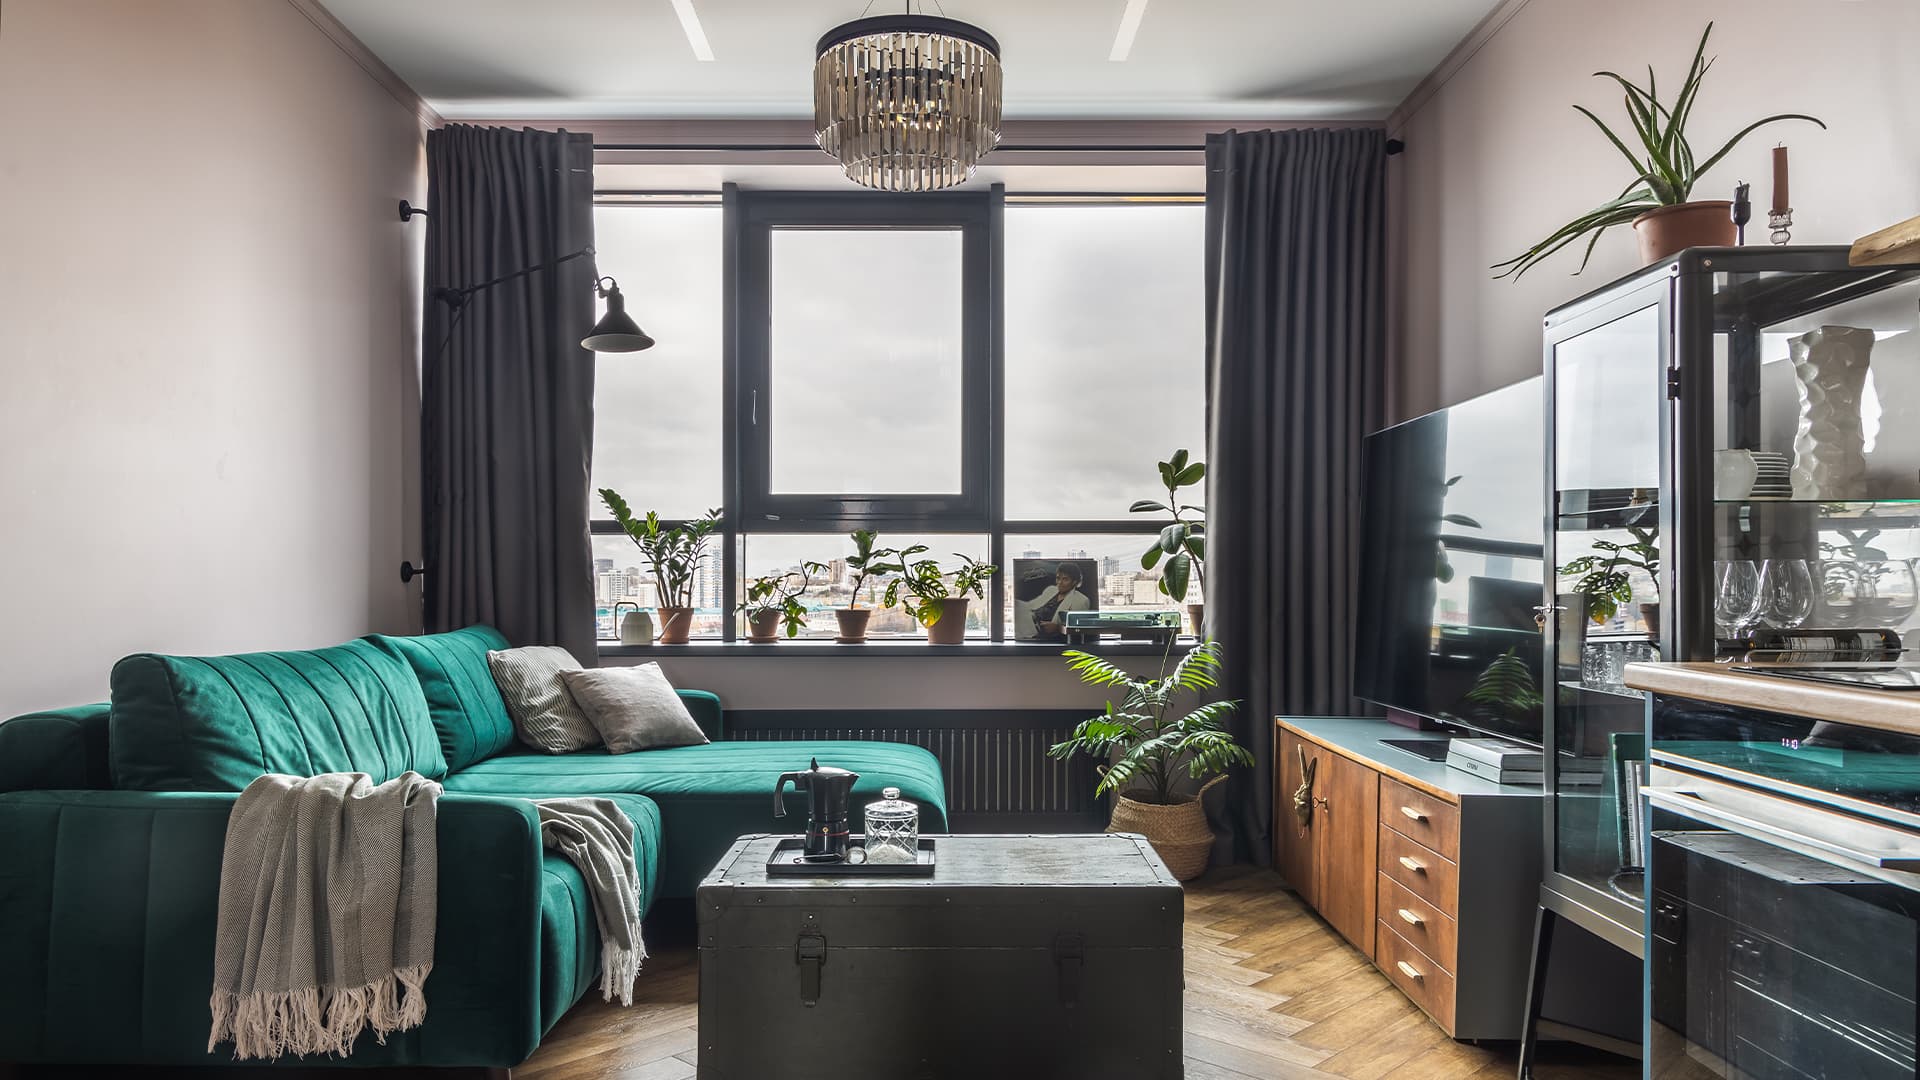 Эклектичный интерьер квартиры с тщательно продуманным декором — проект Надежды Токаревой